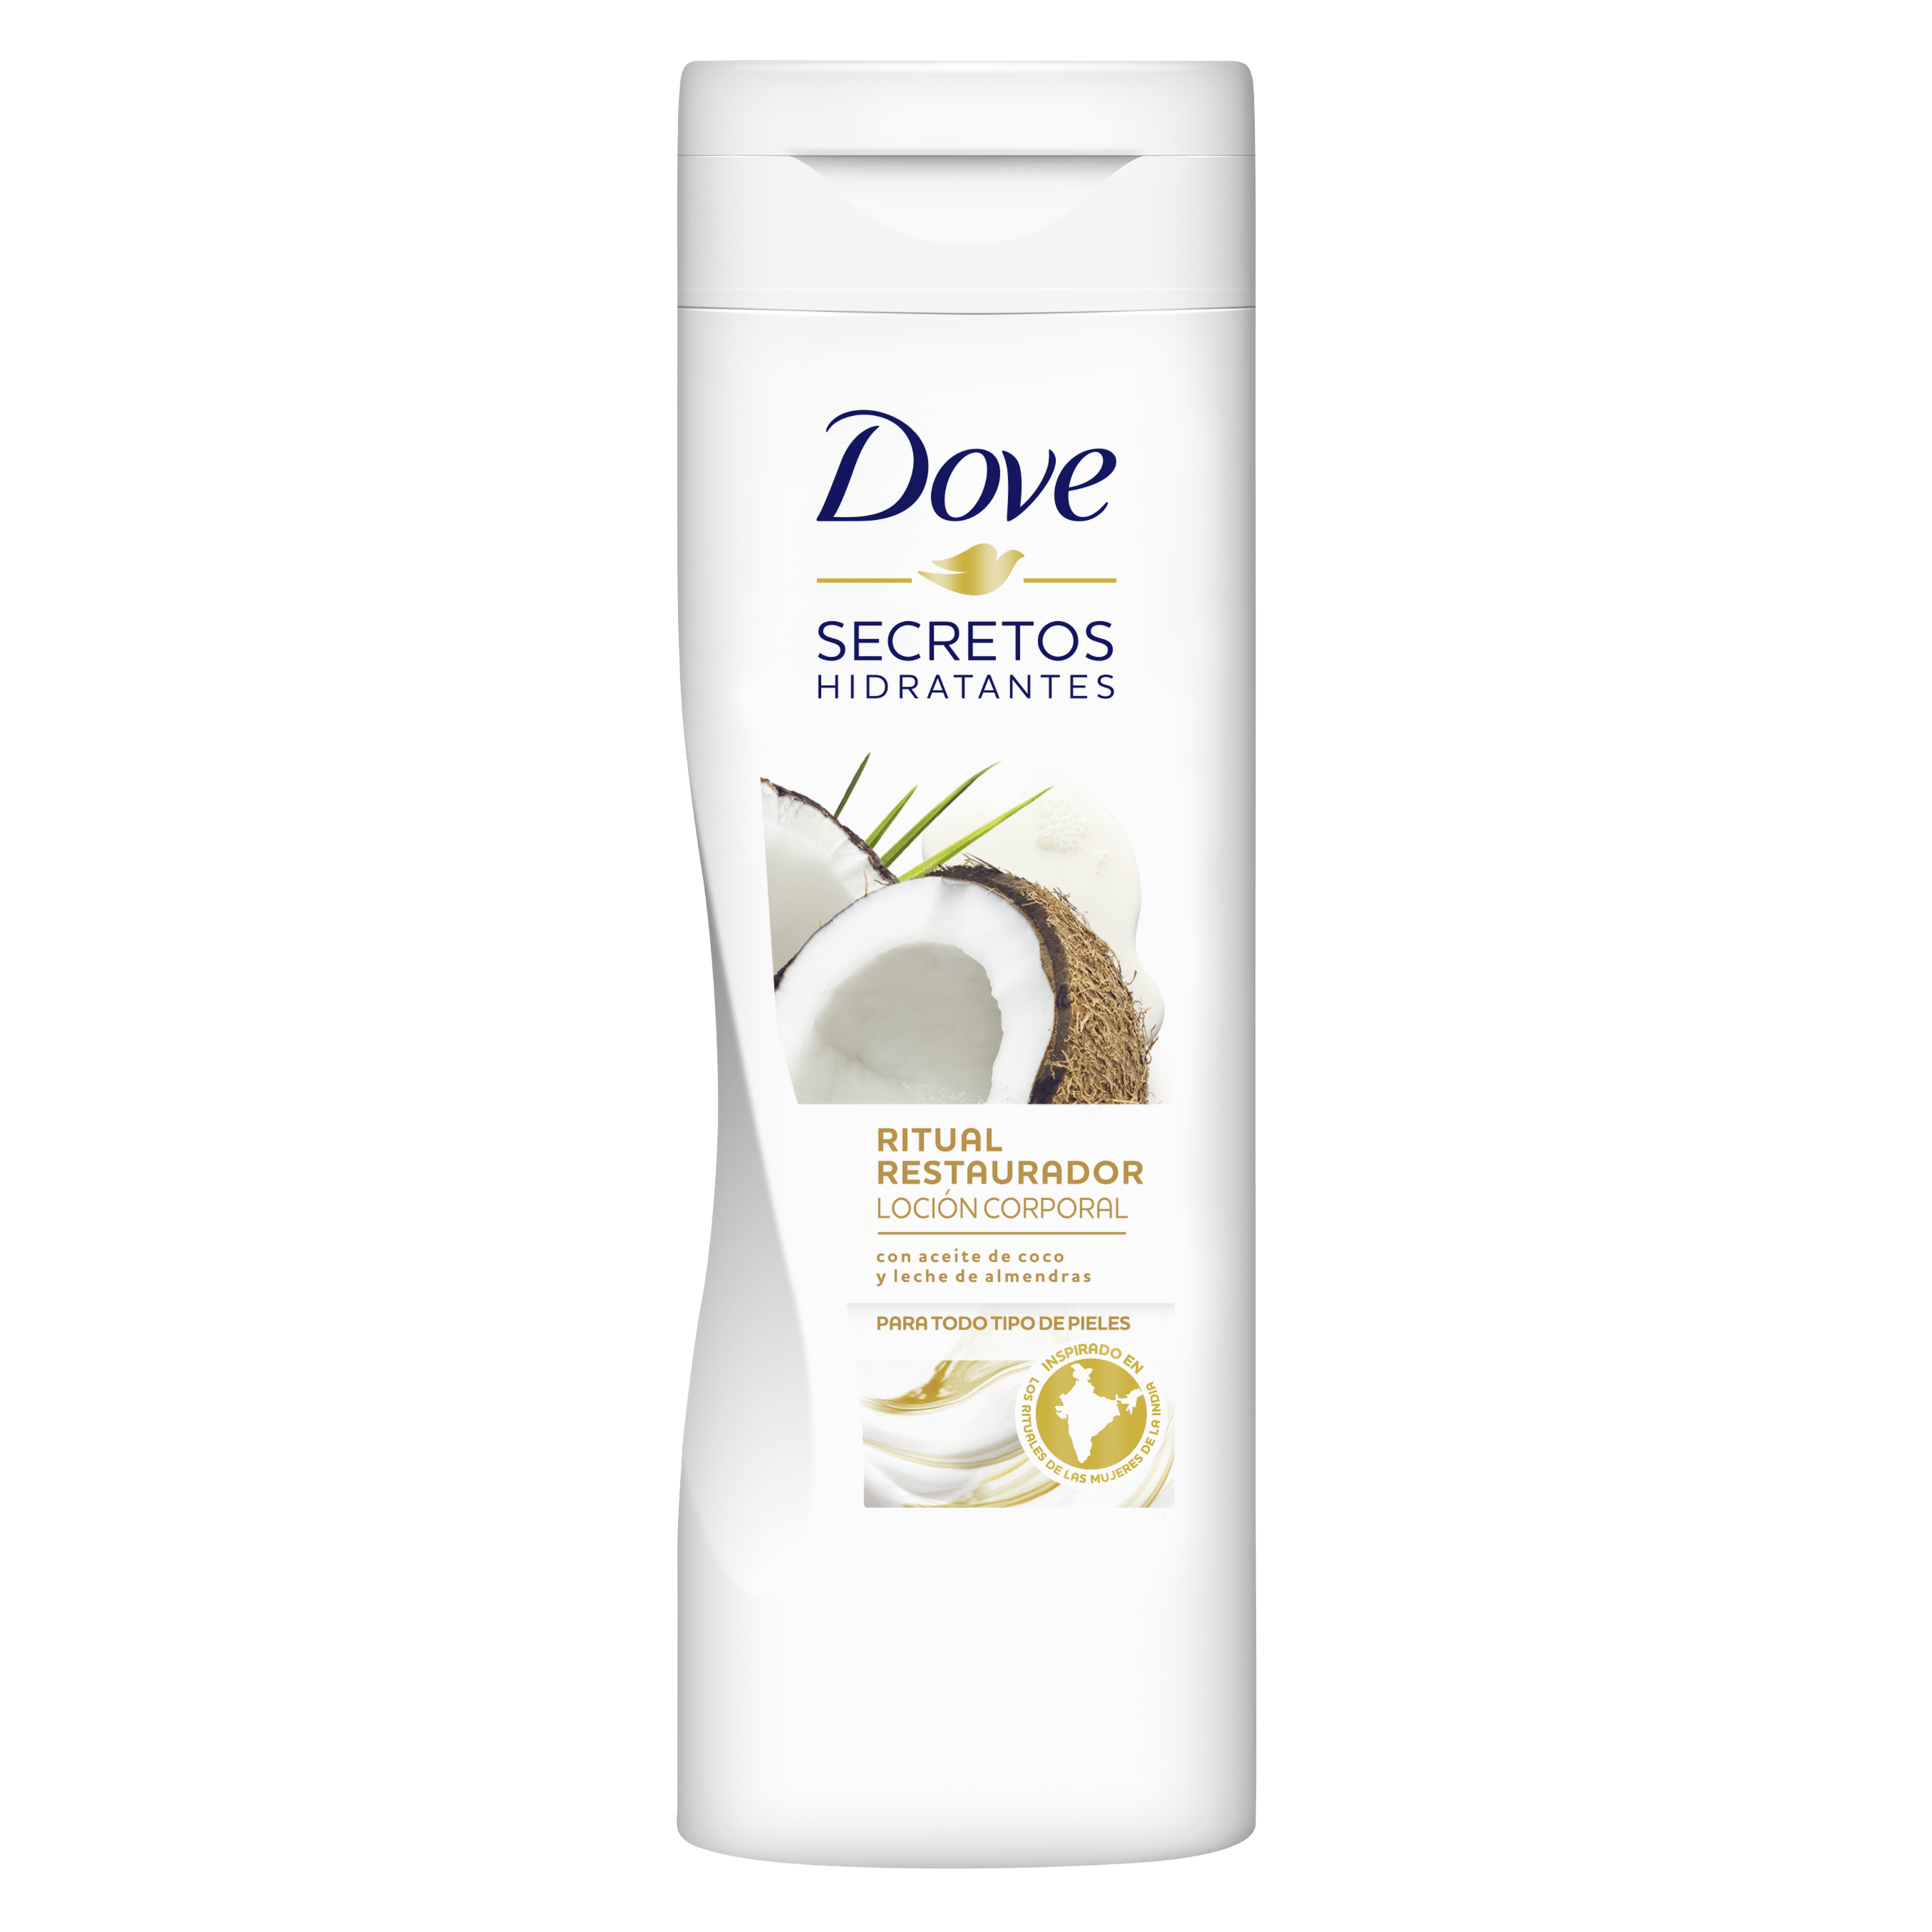 Dove Nourishing Secrets Lotion Restoring Ritual- Coconut Oil and Almond Milk 400ml